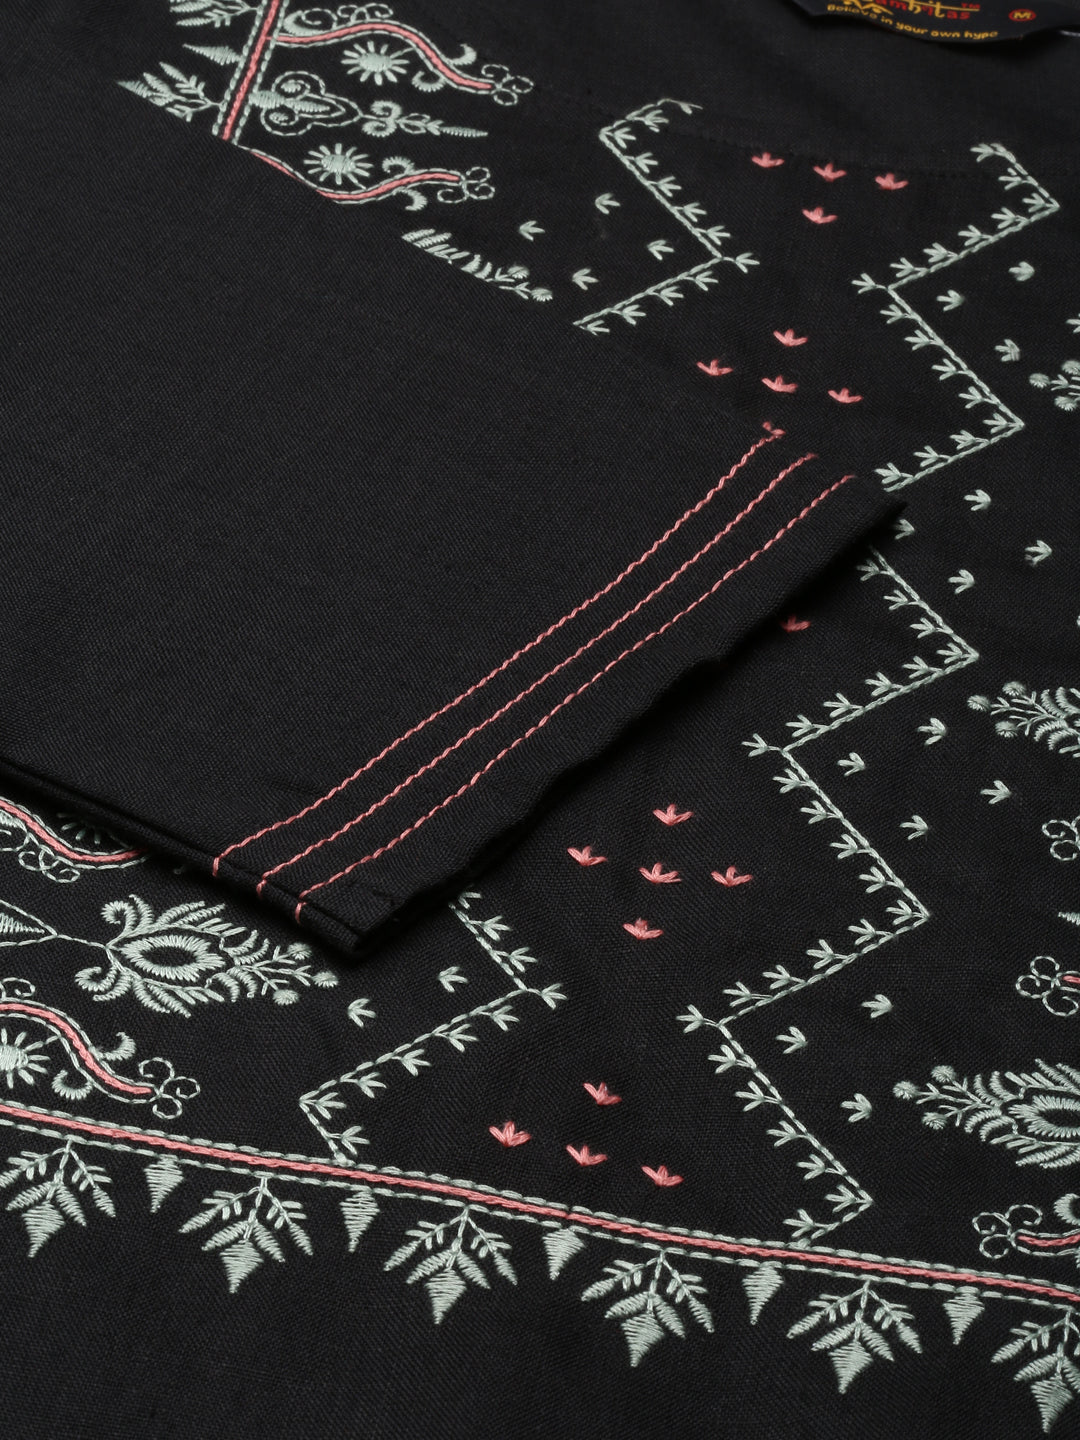 Embroidered Cotton Blend Straight full black Kurta for women